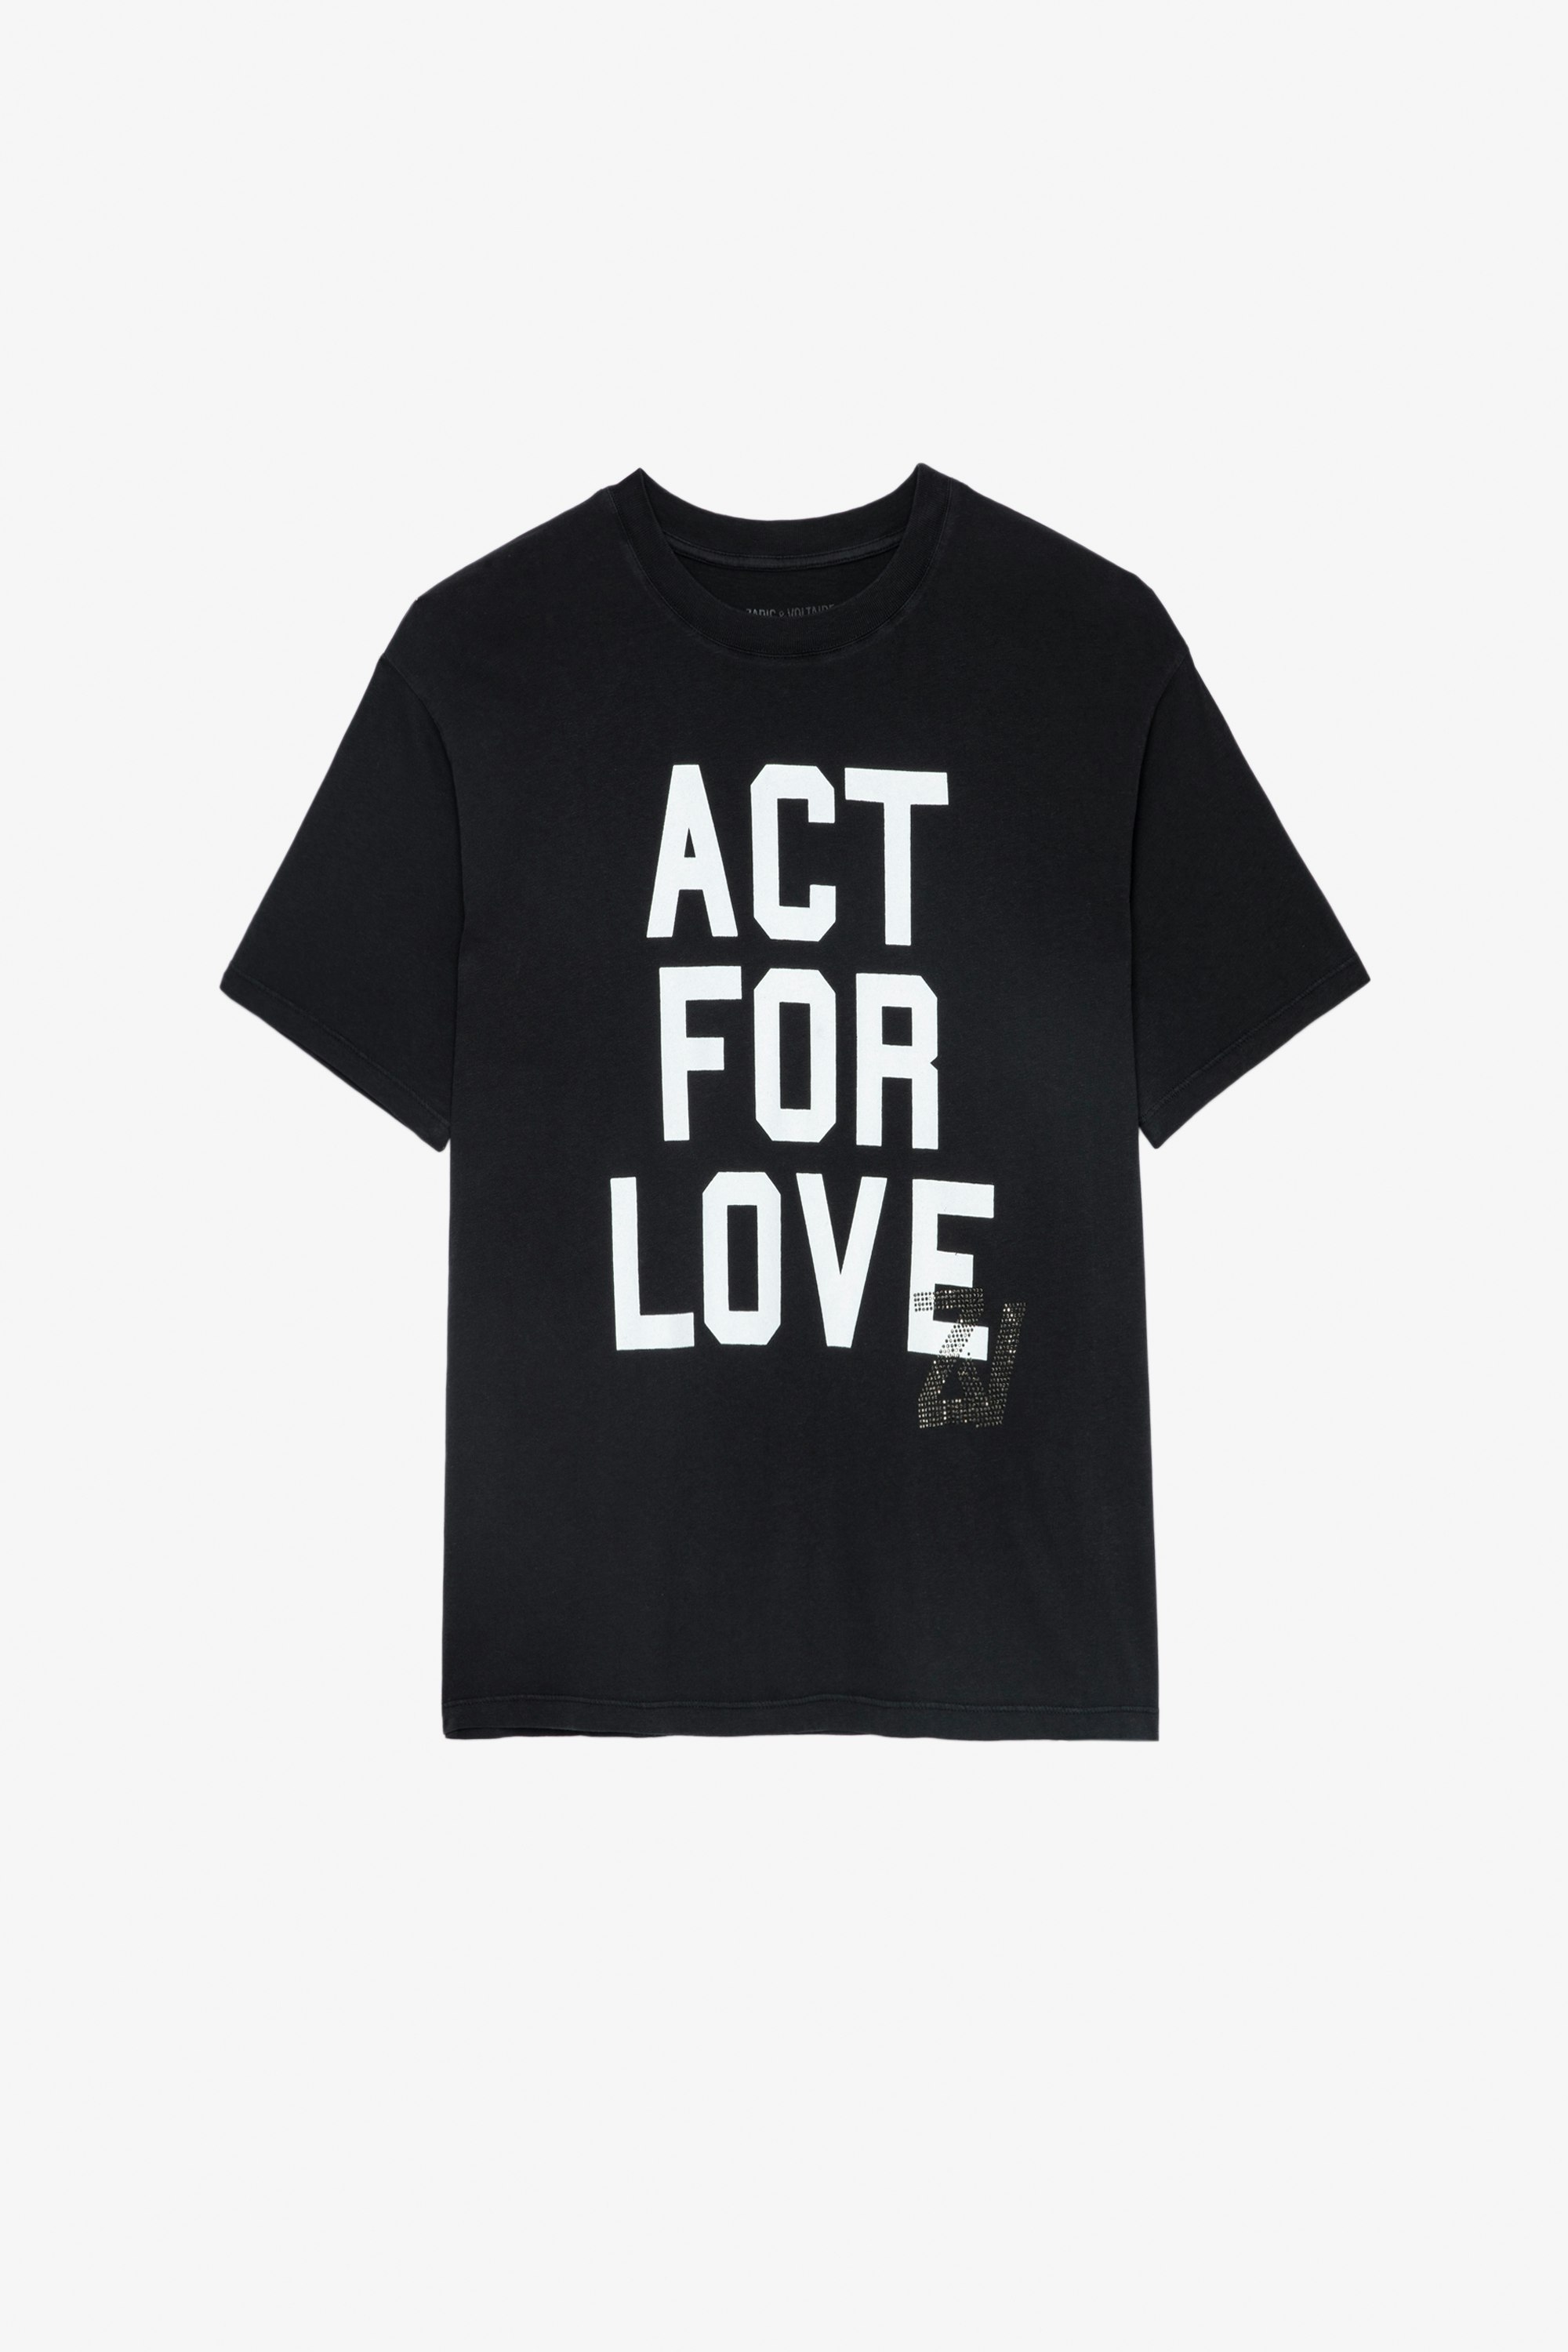 Brooxs Ｔシャツ ブラックコットン半袖ラウンドネックTシャツ 「Act For Love」 レディース